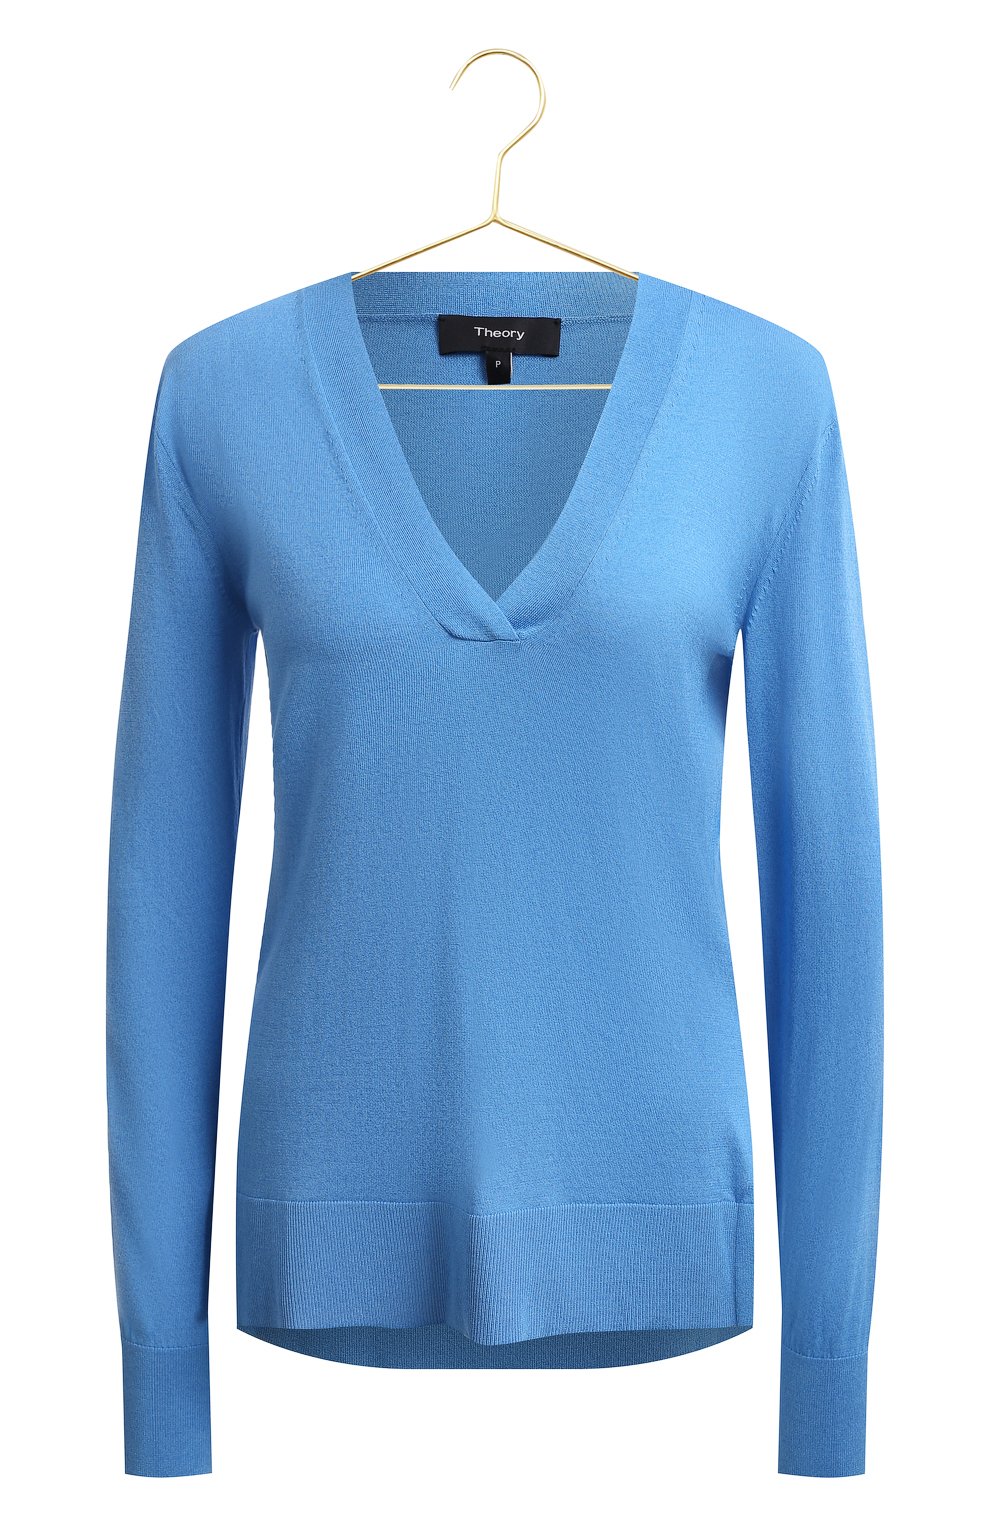 Пуловер | Theory | Голубой - 1